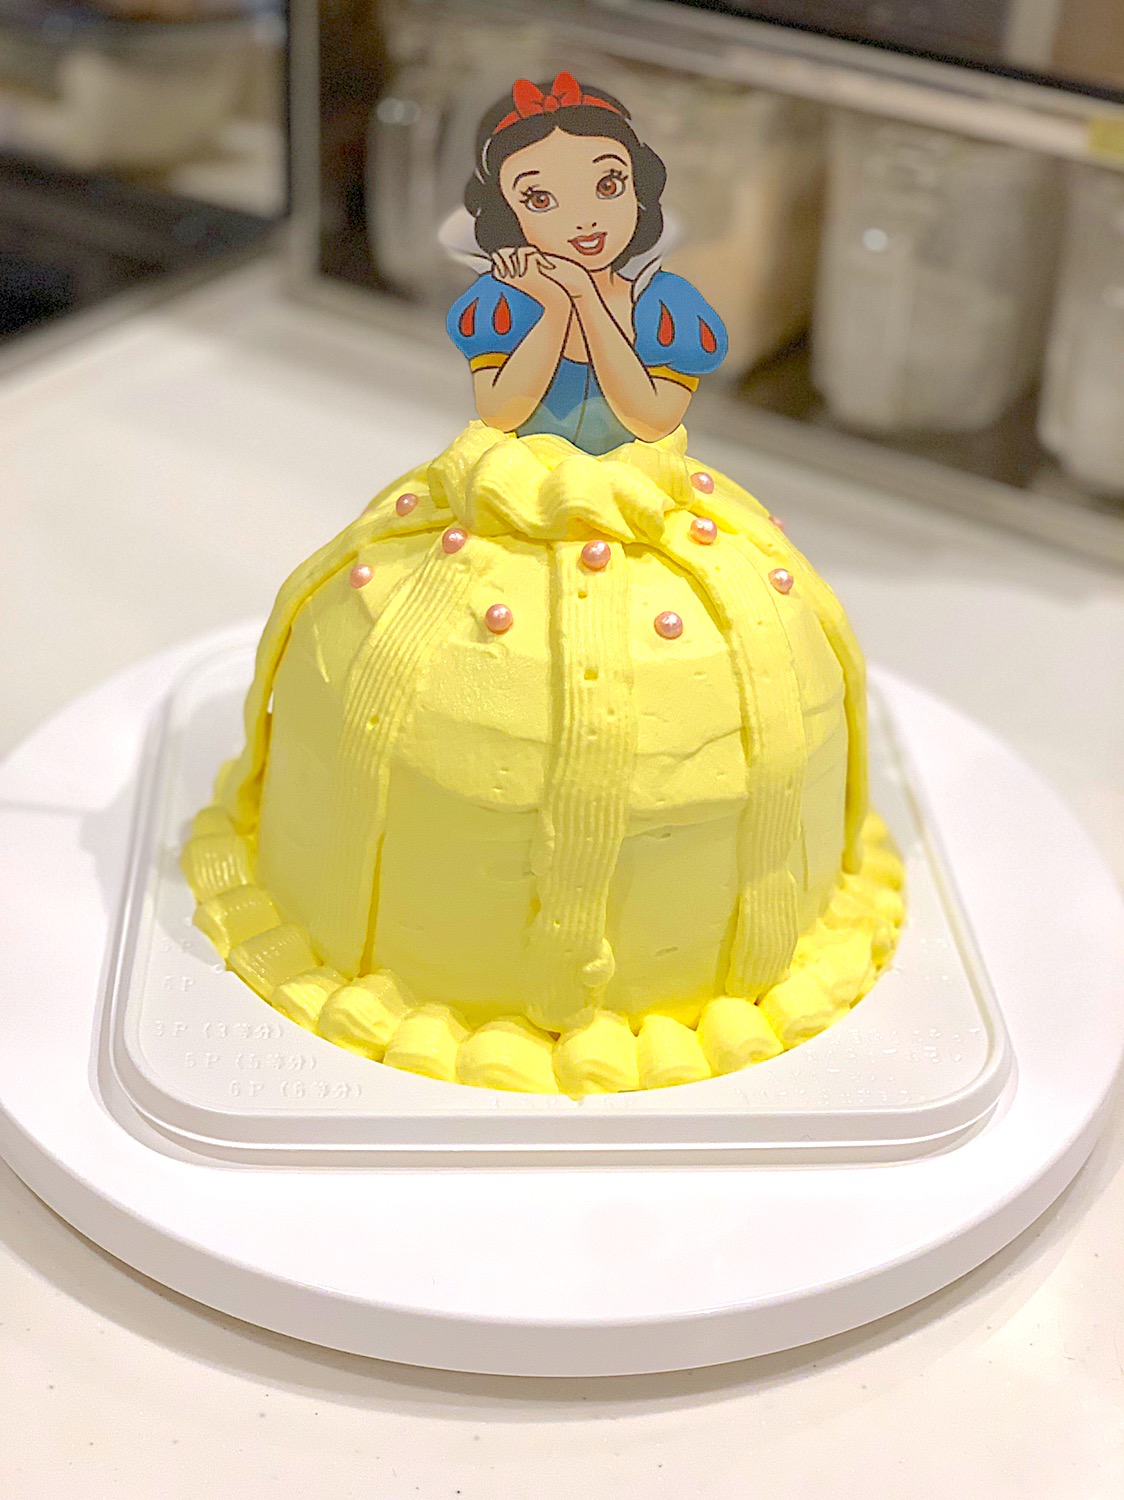 白雪姫ケーキドレスケーキチョコレートケーキ白雪姫 バースデーケーキ 誕生日ケーキ Yui Snapdish スナップディッシュ Id Kdluca